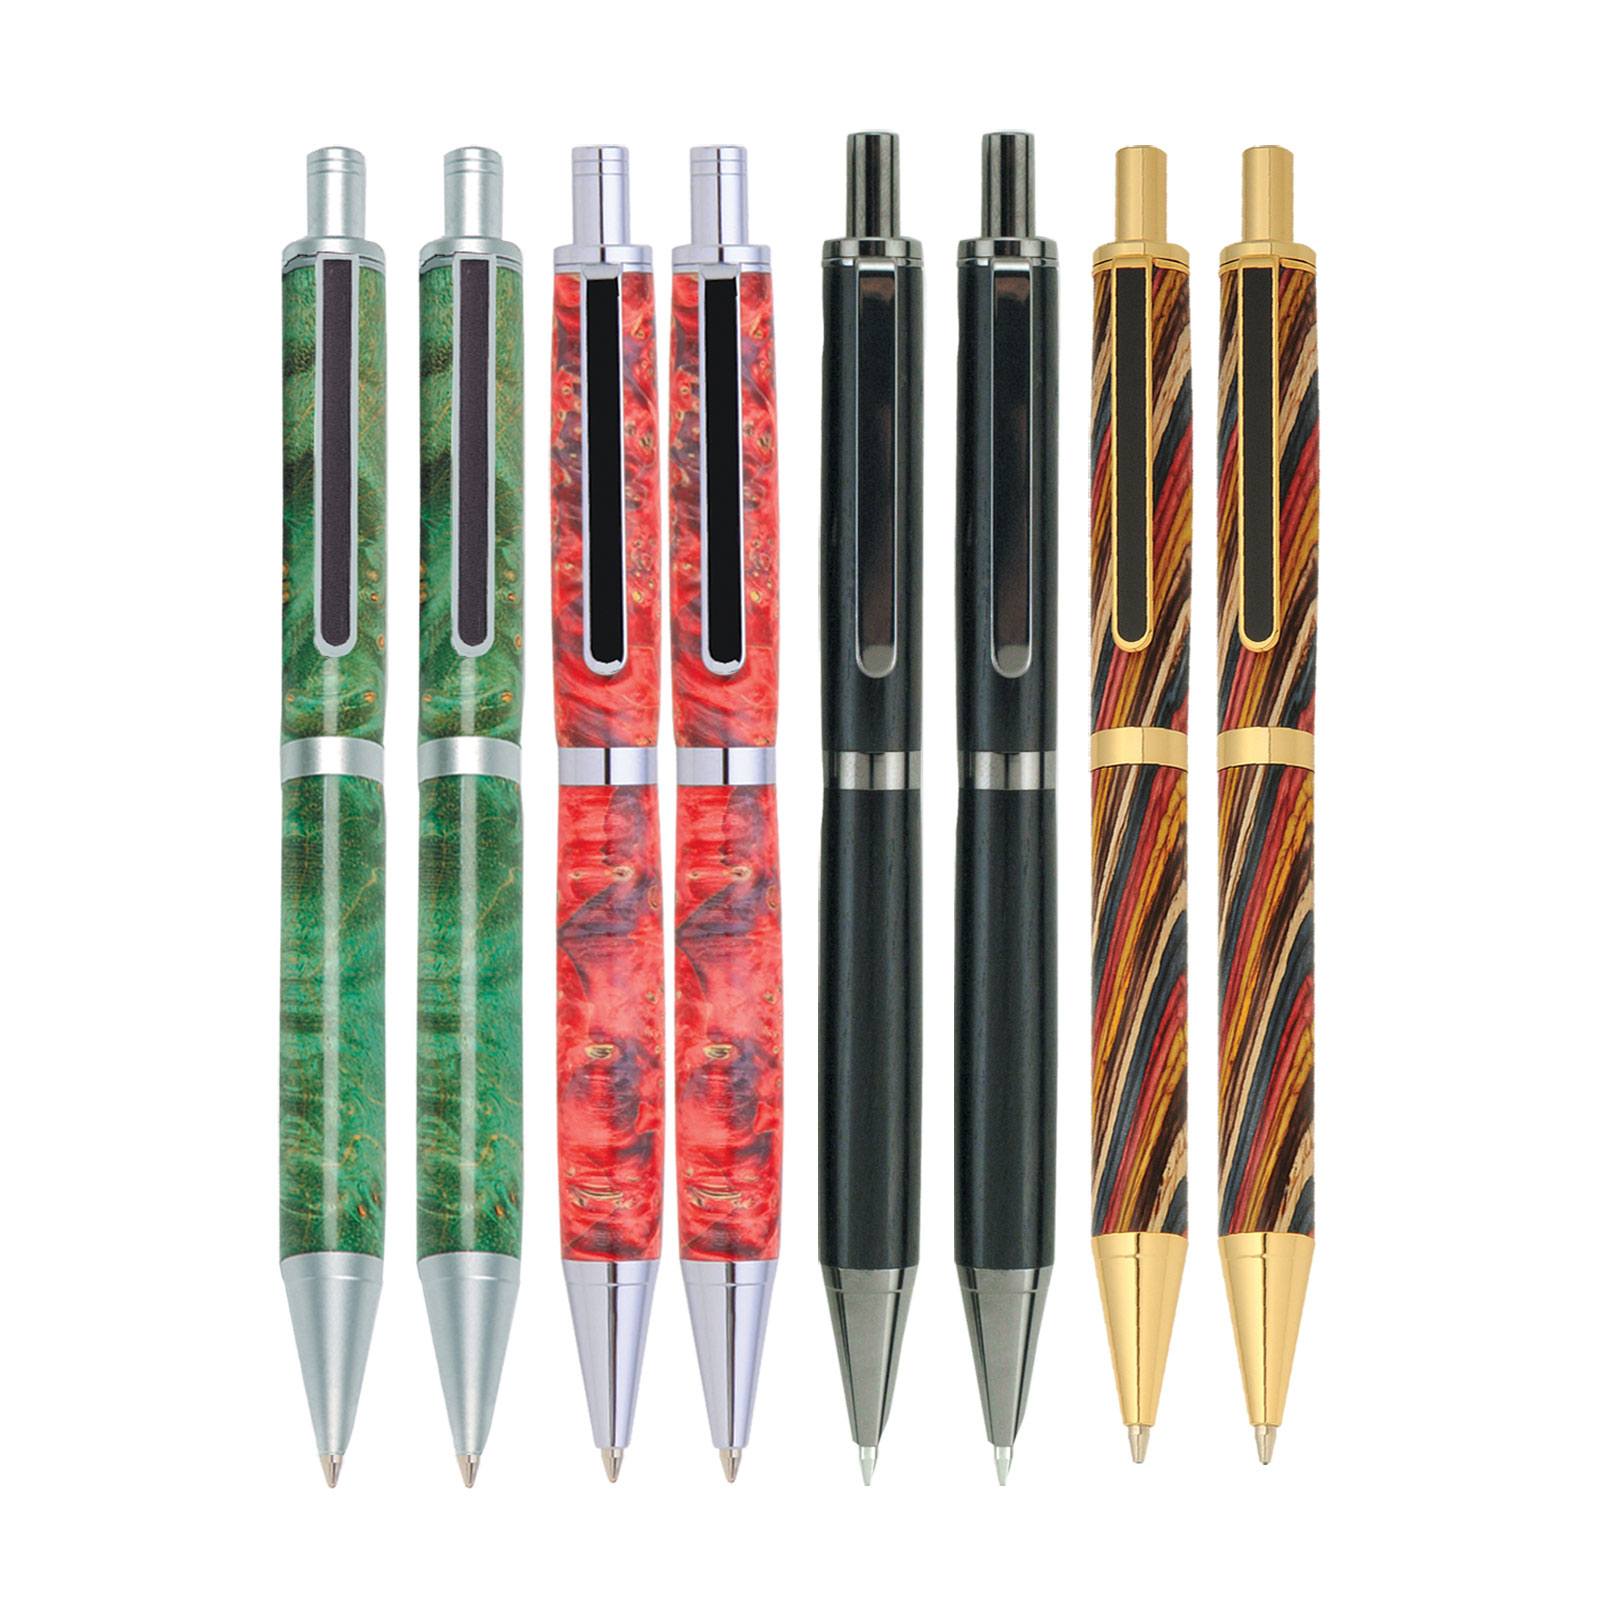 8 Slimline Pro Click Pen Kit Starter Set at Penn State Industries